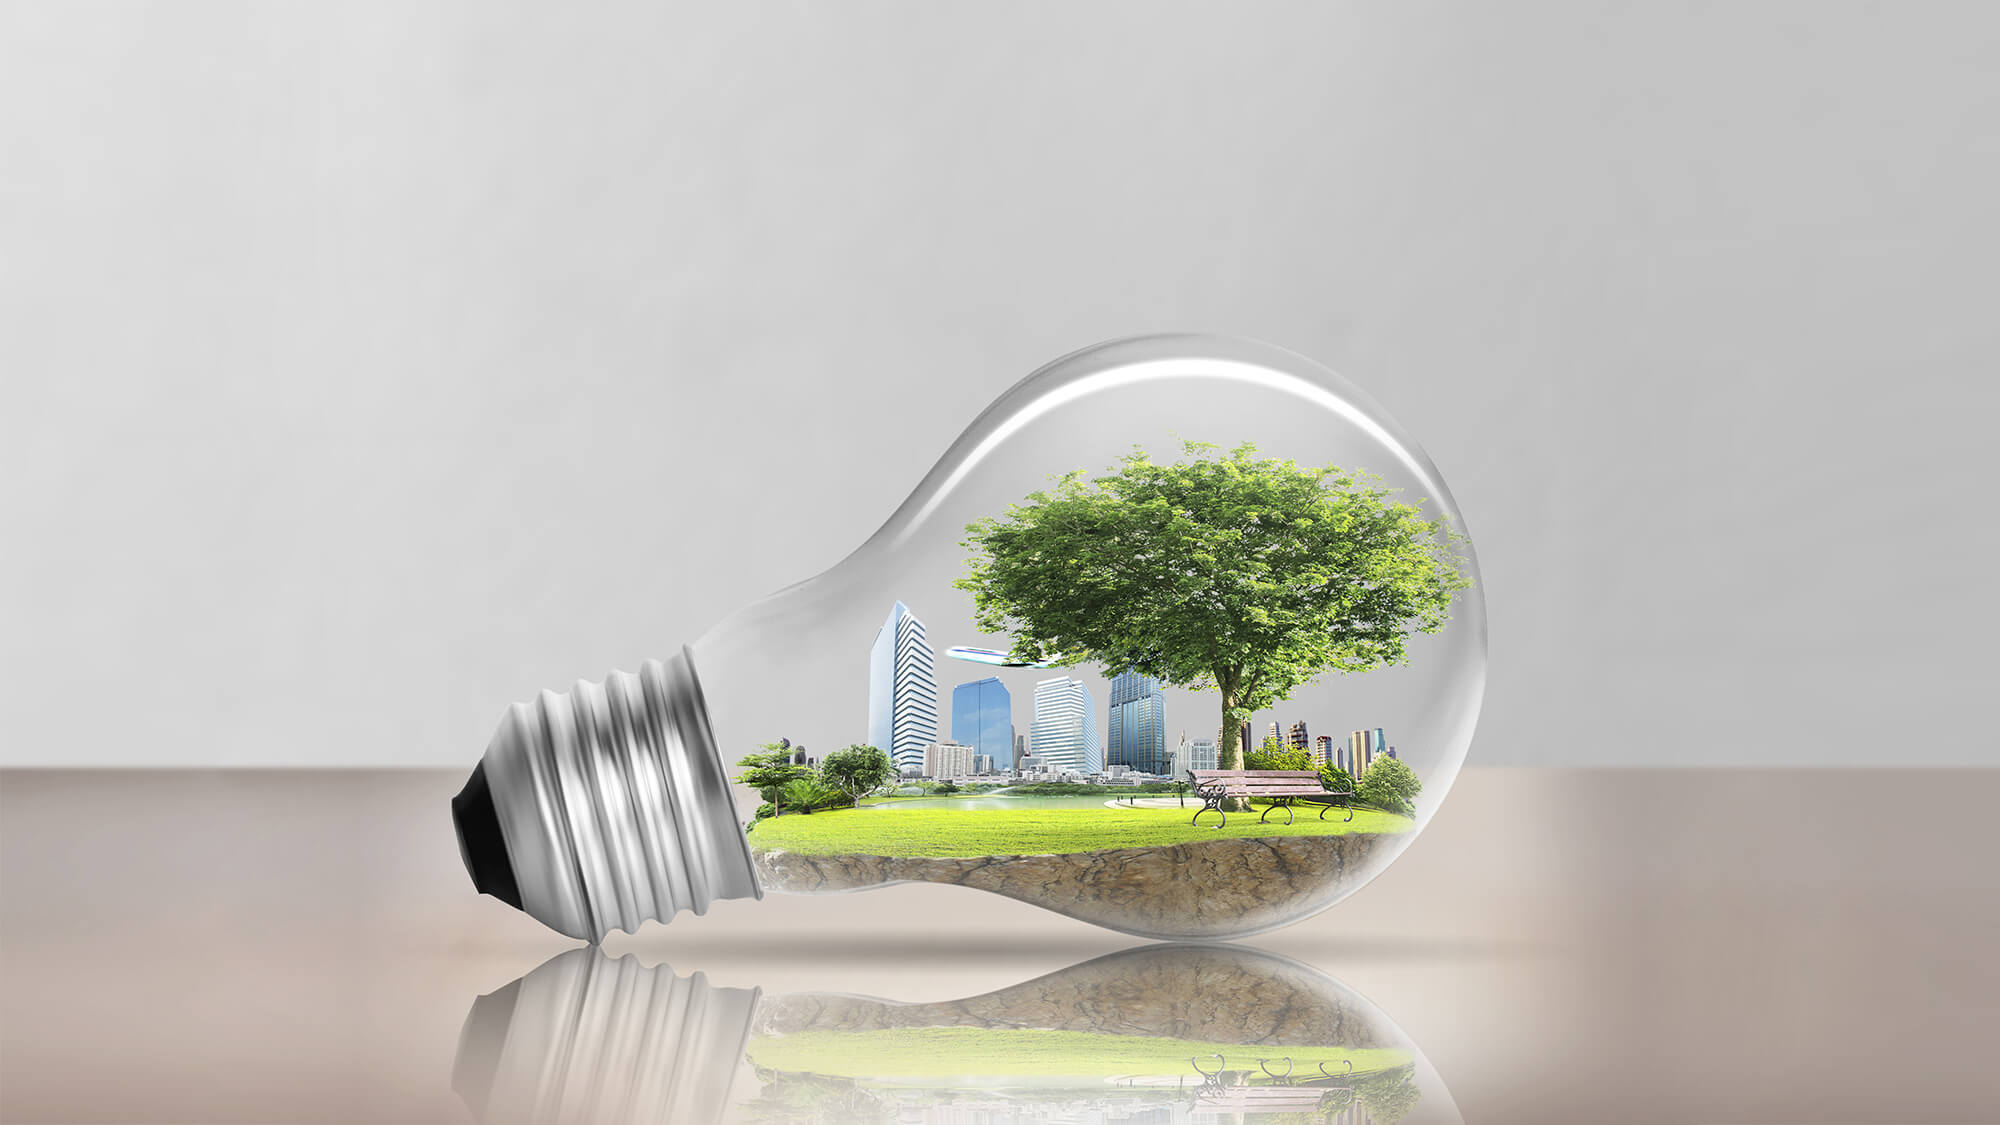 Featured image for “Le Biogaz, une ressource à développer pour réduire la dépendance énergétique de notre pays vis-à-vis de l’étranger”